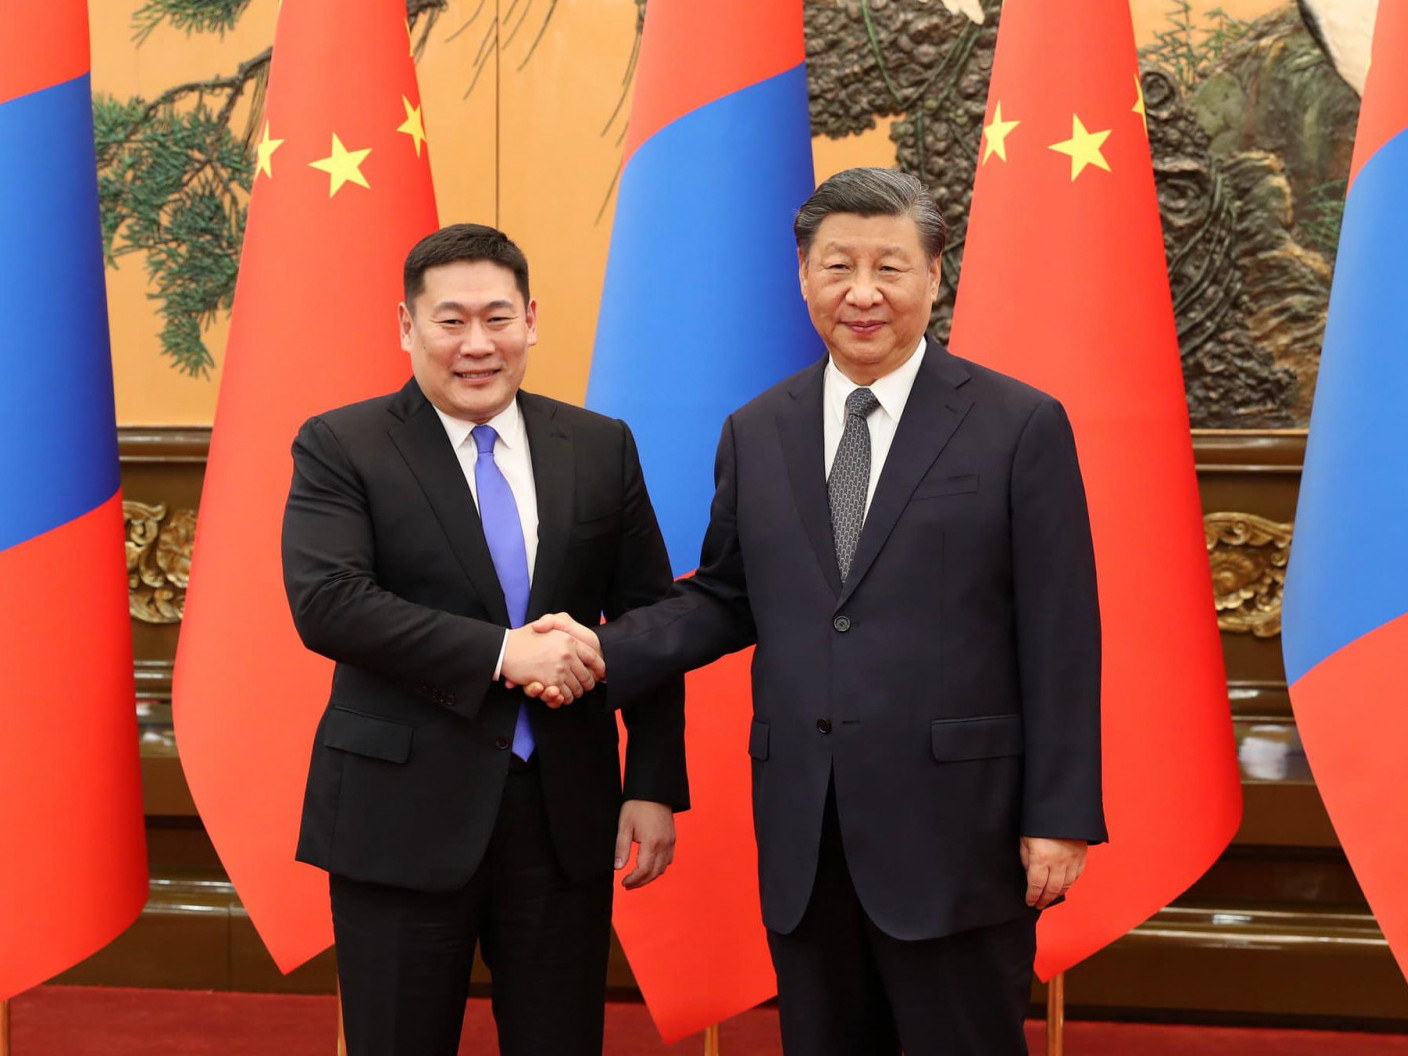 БНХАУ-ын дарга Ши Жиньпин, "Хятад бол Монгол Улсын итгэж болохуйц түнш мөн" хэмээн Ерөнхий сайд Л.Оюун-Эрдэнэтэй уулзахдаа мэдэгджээ